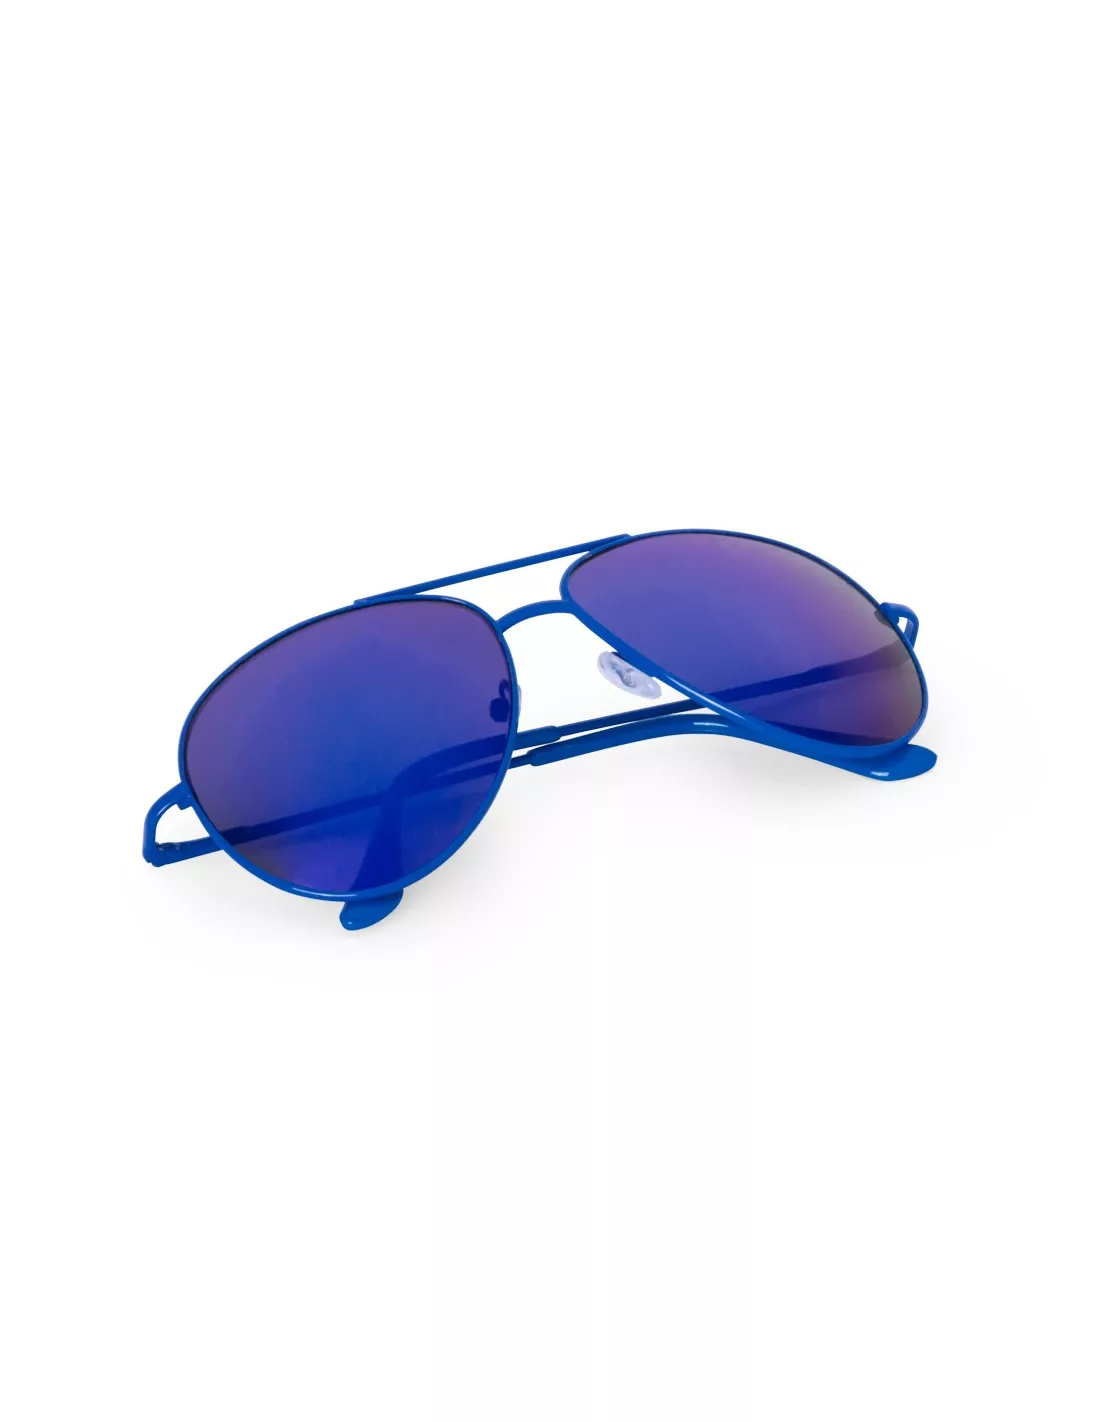 Gafas Sol estilo Aviador Kindux UV400